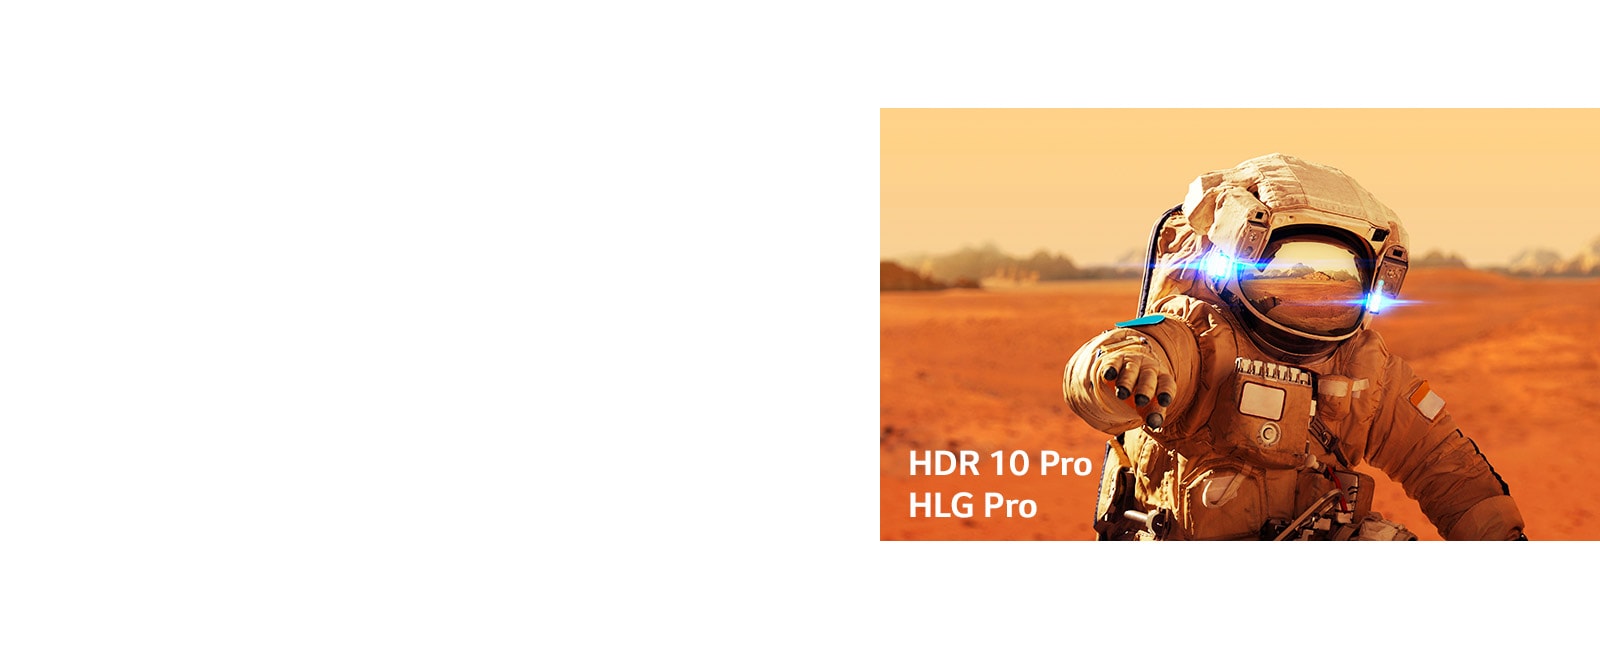 مارفل، آيرون مان، بطاقات العناوين مع شعارات HLG pro و HDR 10 Pro